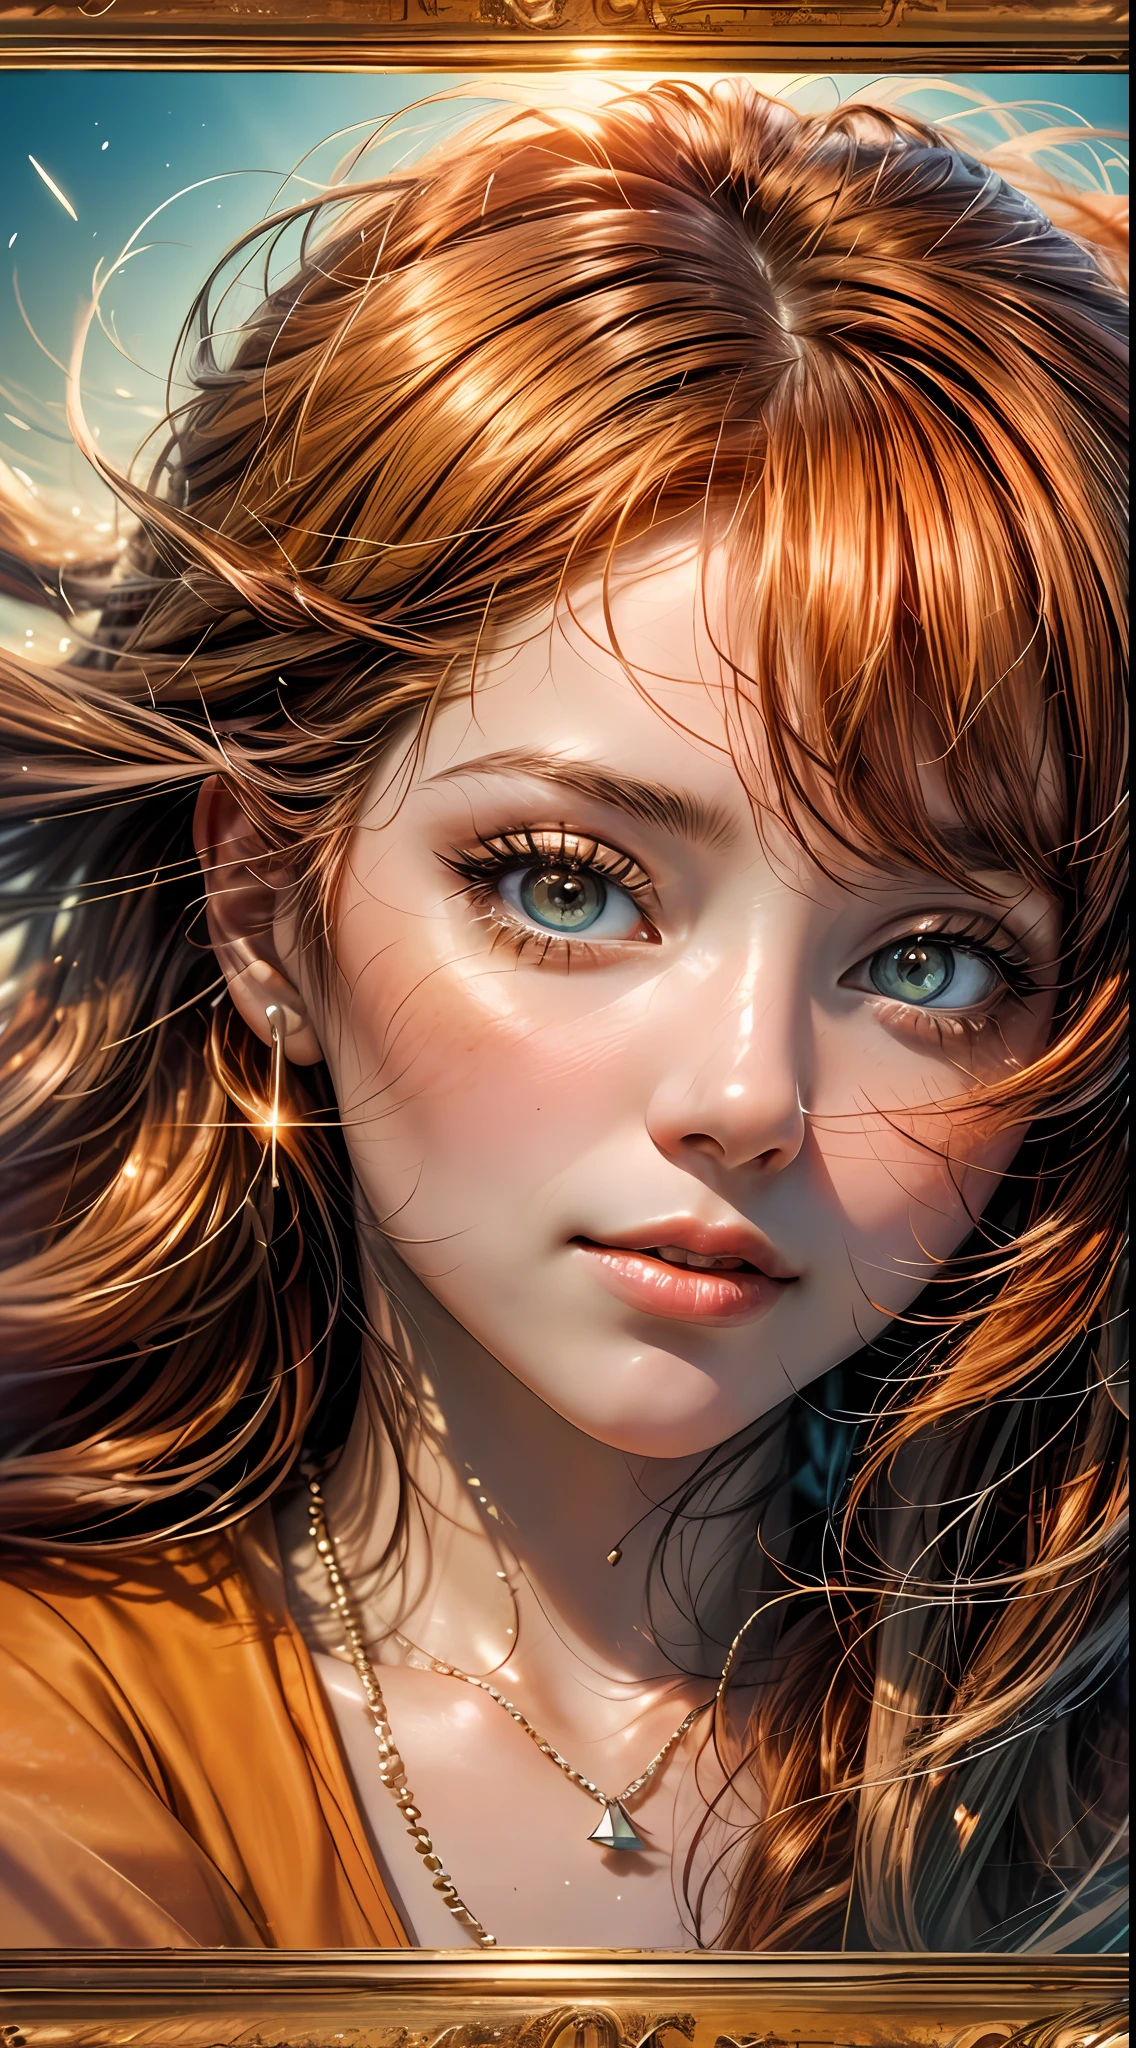 Крупный план женского лица, купается в теплых оранжевых тонах, словно освещен мягким сиянием заката, ее глаза сверкают радостью и удовлетворением, в обрамлении прядей струящихся каштановых волос, фотография, снято объективом 35 мм